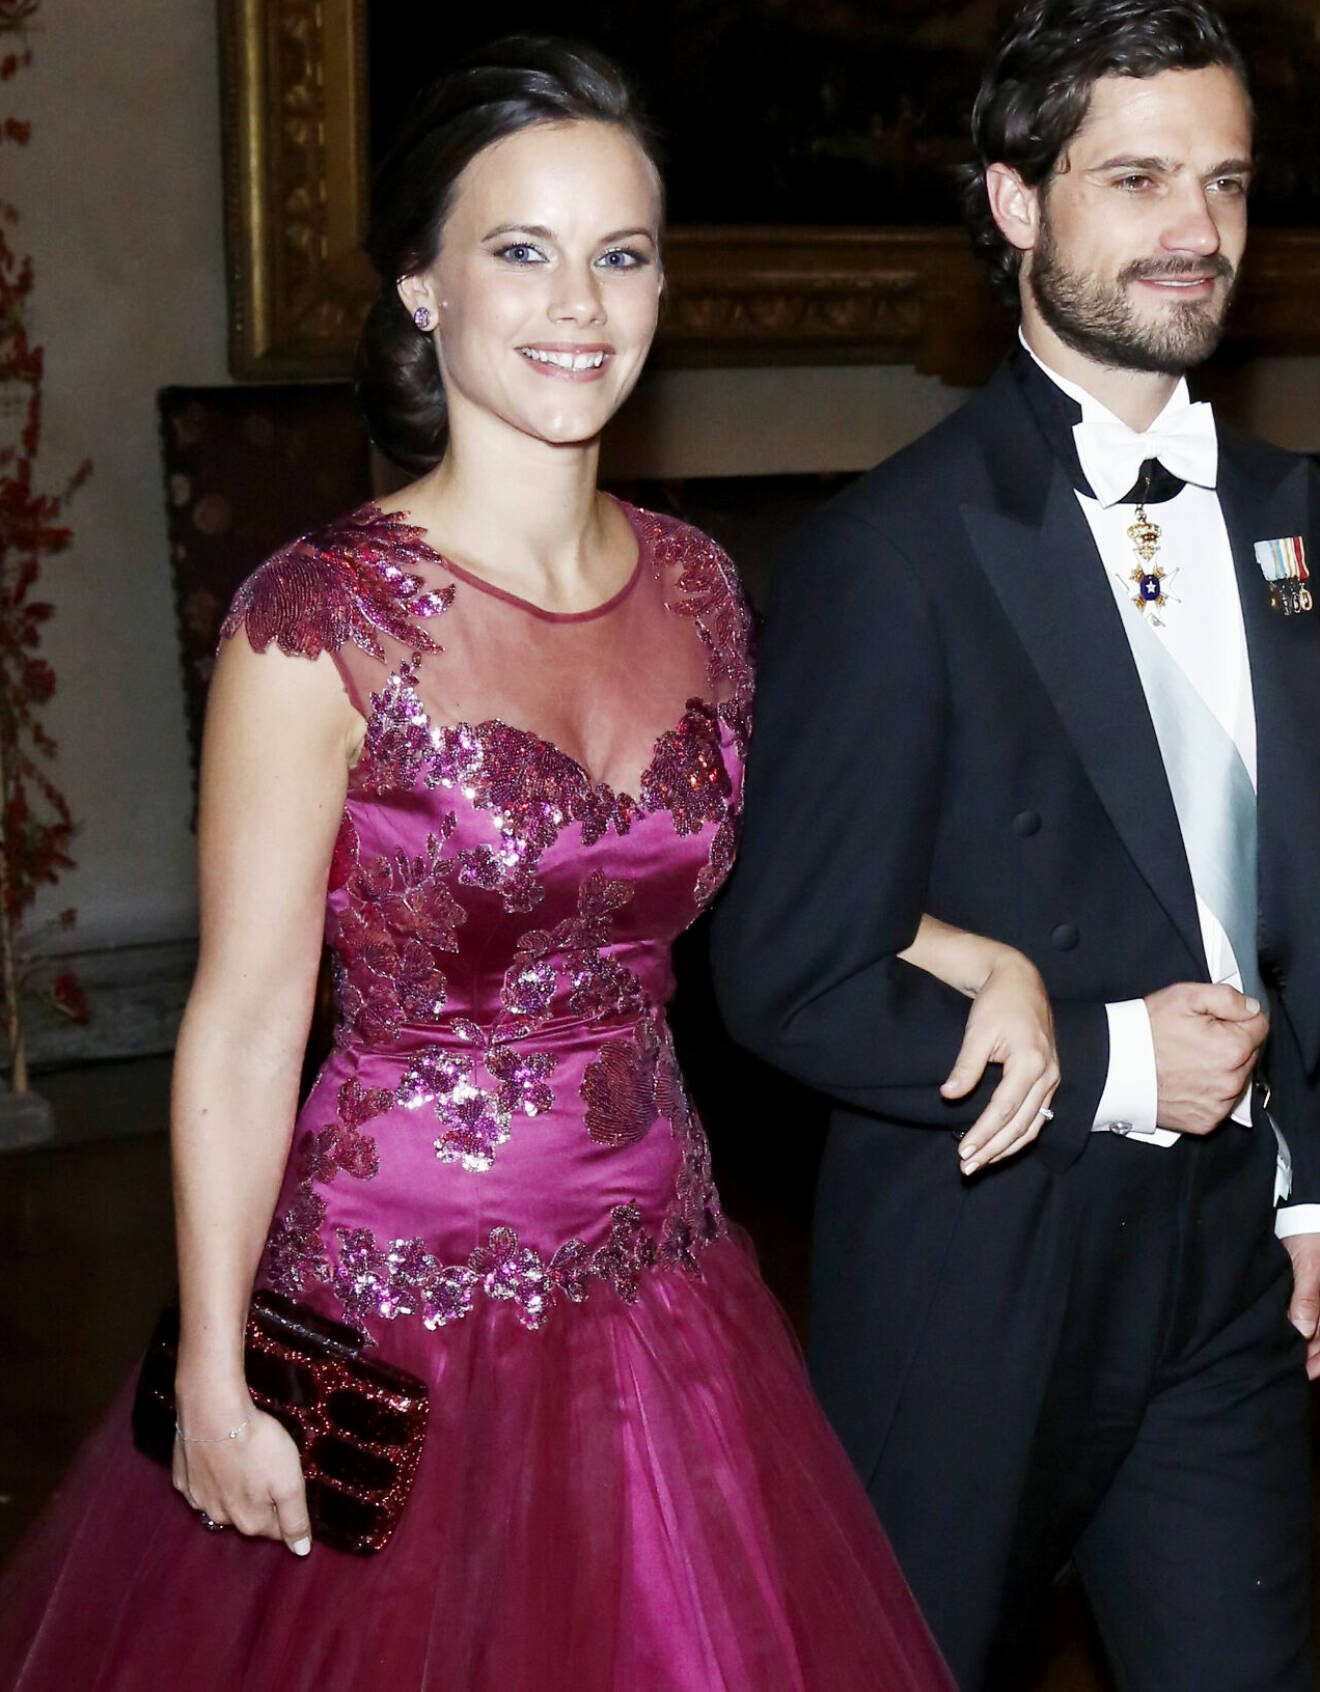 Prinsessan Sofia på Nobel 2014 i klänning från Ida Sjöstedt